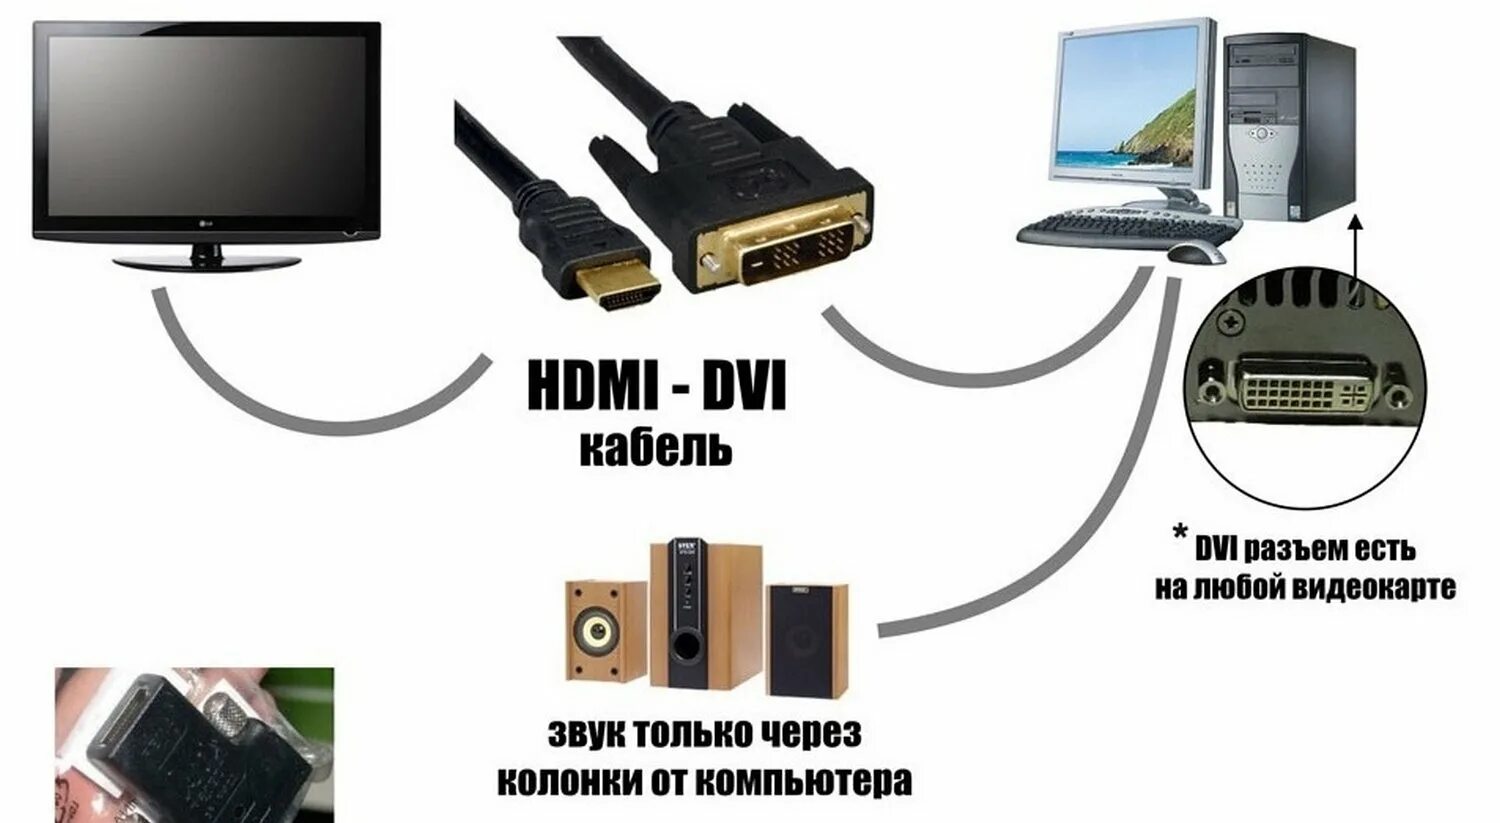 Как можно подключиться к компьютеру. HDMI кабель для телевизора и компьютера как подключить. Как подключить ПК К телевизору через HDMI кабель. Как подсоединить провод HDMI от компьютера к телевизору. Как подключить телевизионный кабель к монитору компьютера.